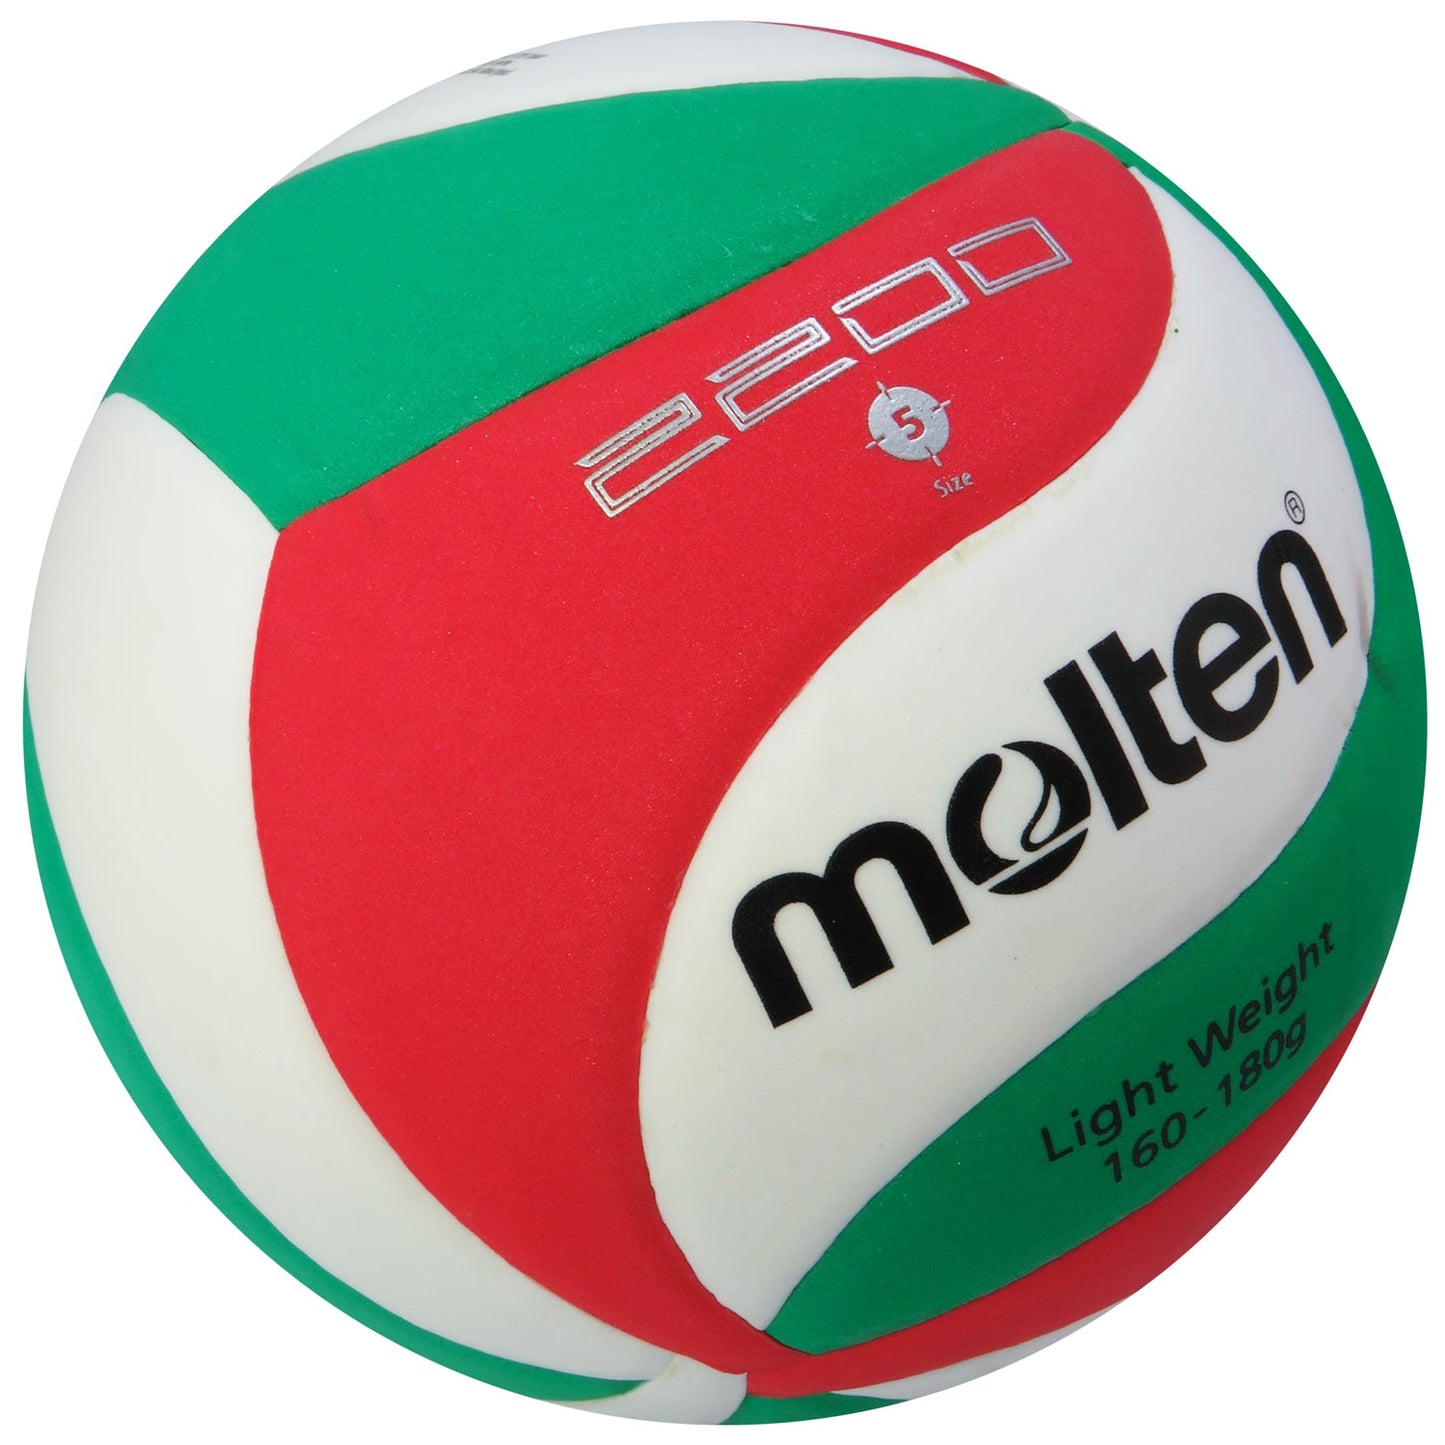 Balon Voleibol Molten Eva V5m2200L #5 Original Soft / Suave - Fundamentación